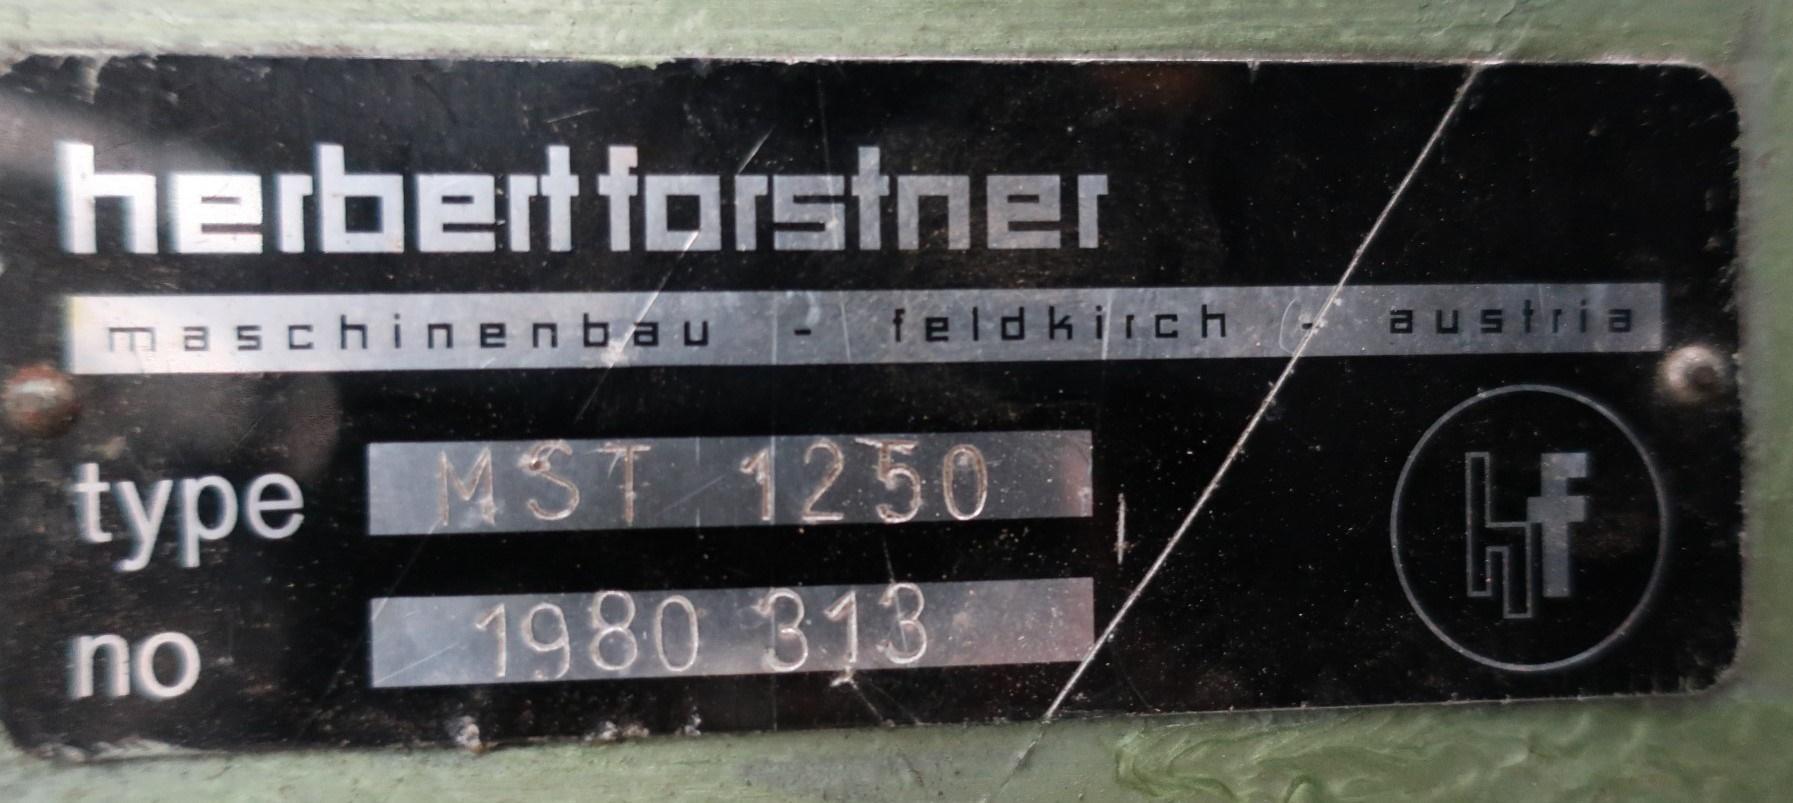 Miscellaneous/Herbert Forstner - MST 1250